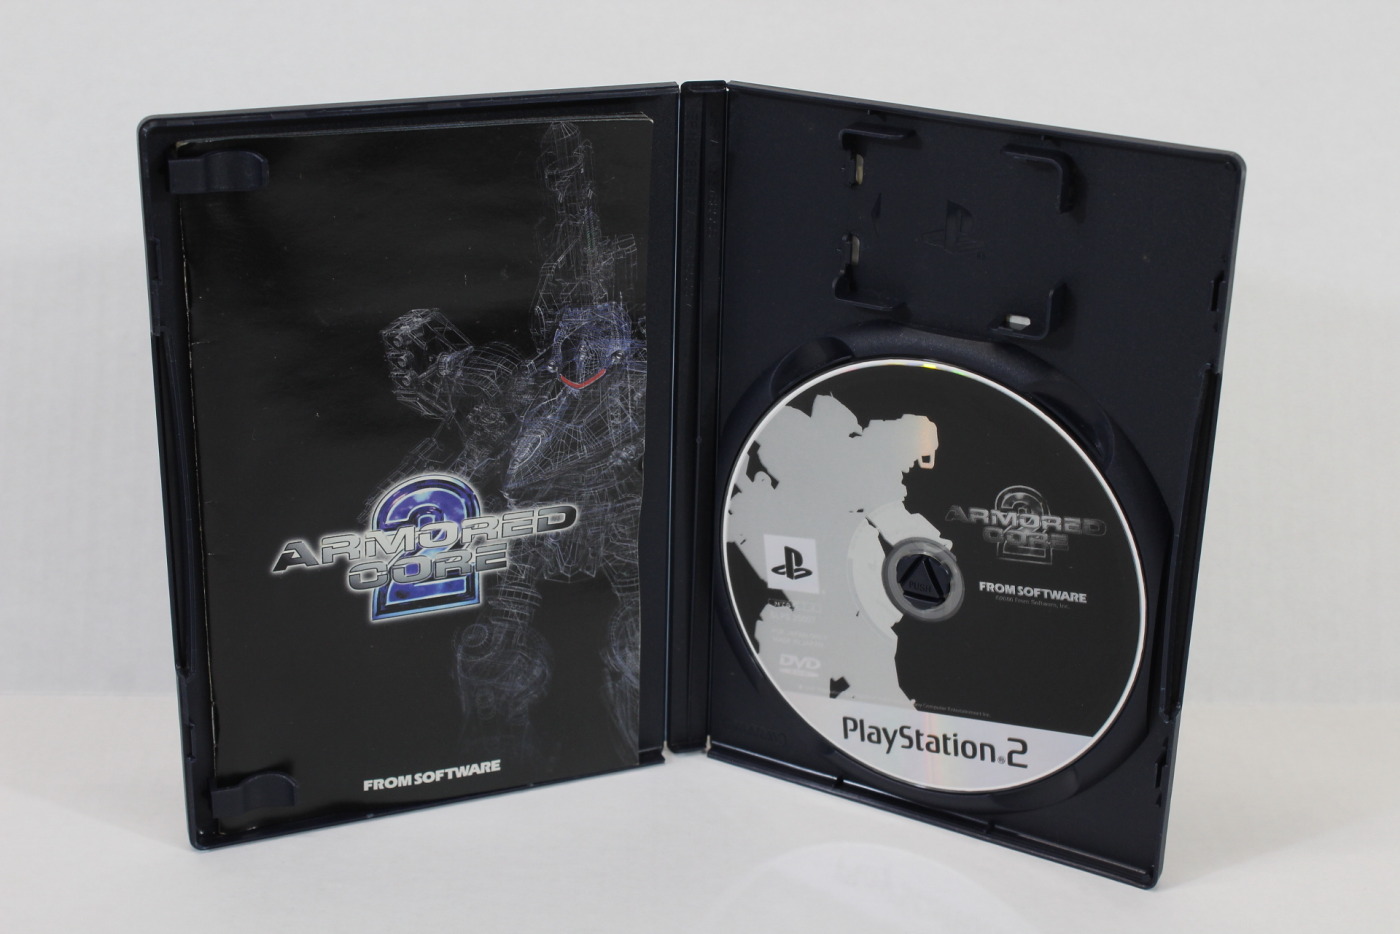 Armored Core 2 - PS2, Retro Console Games